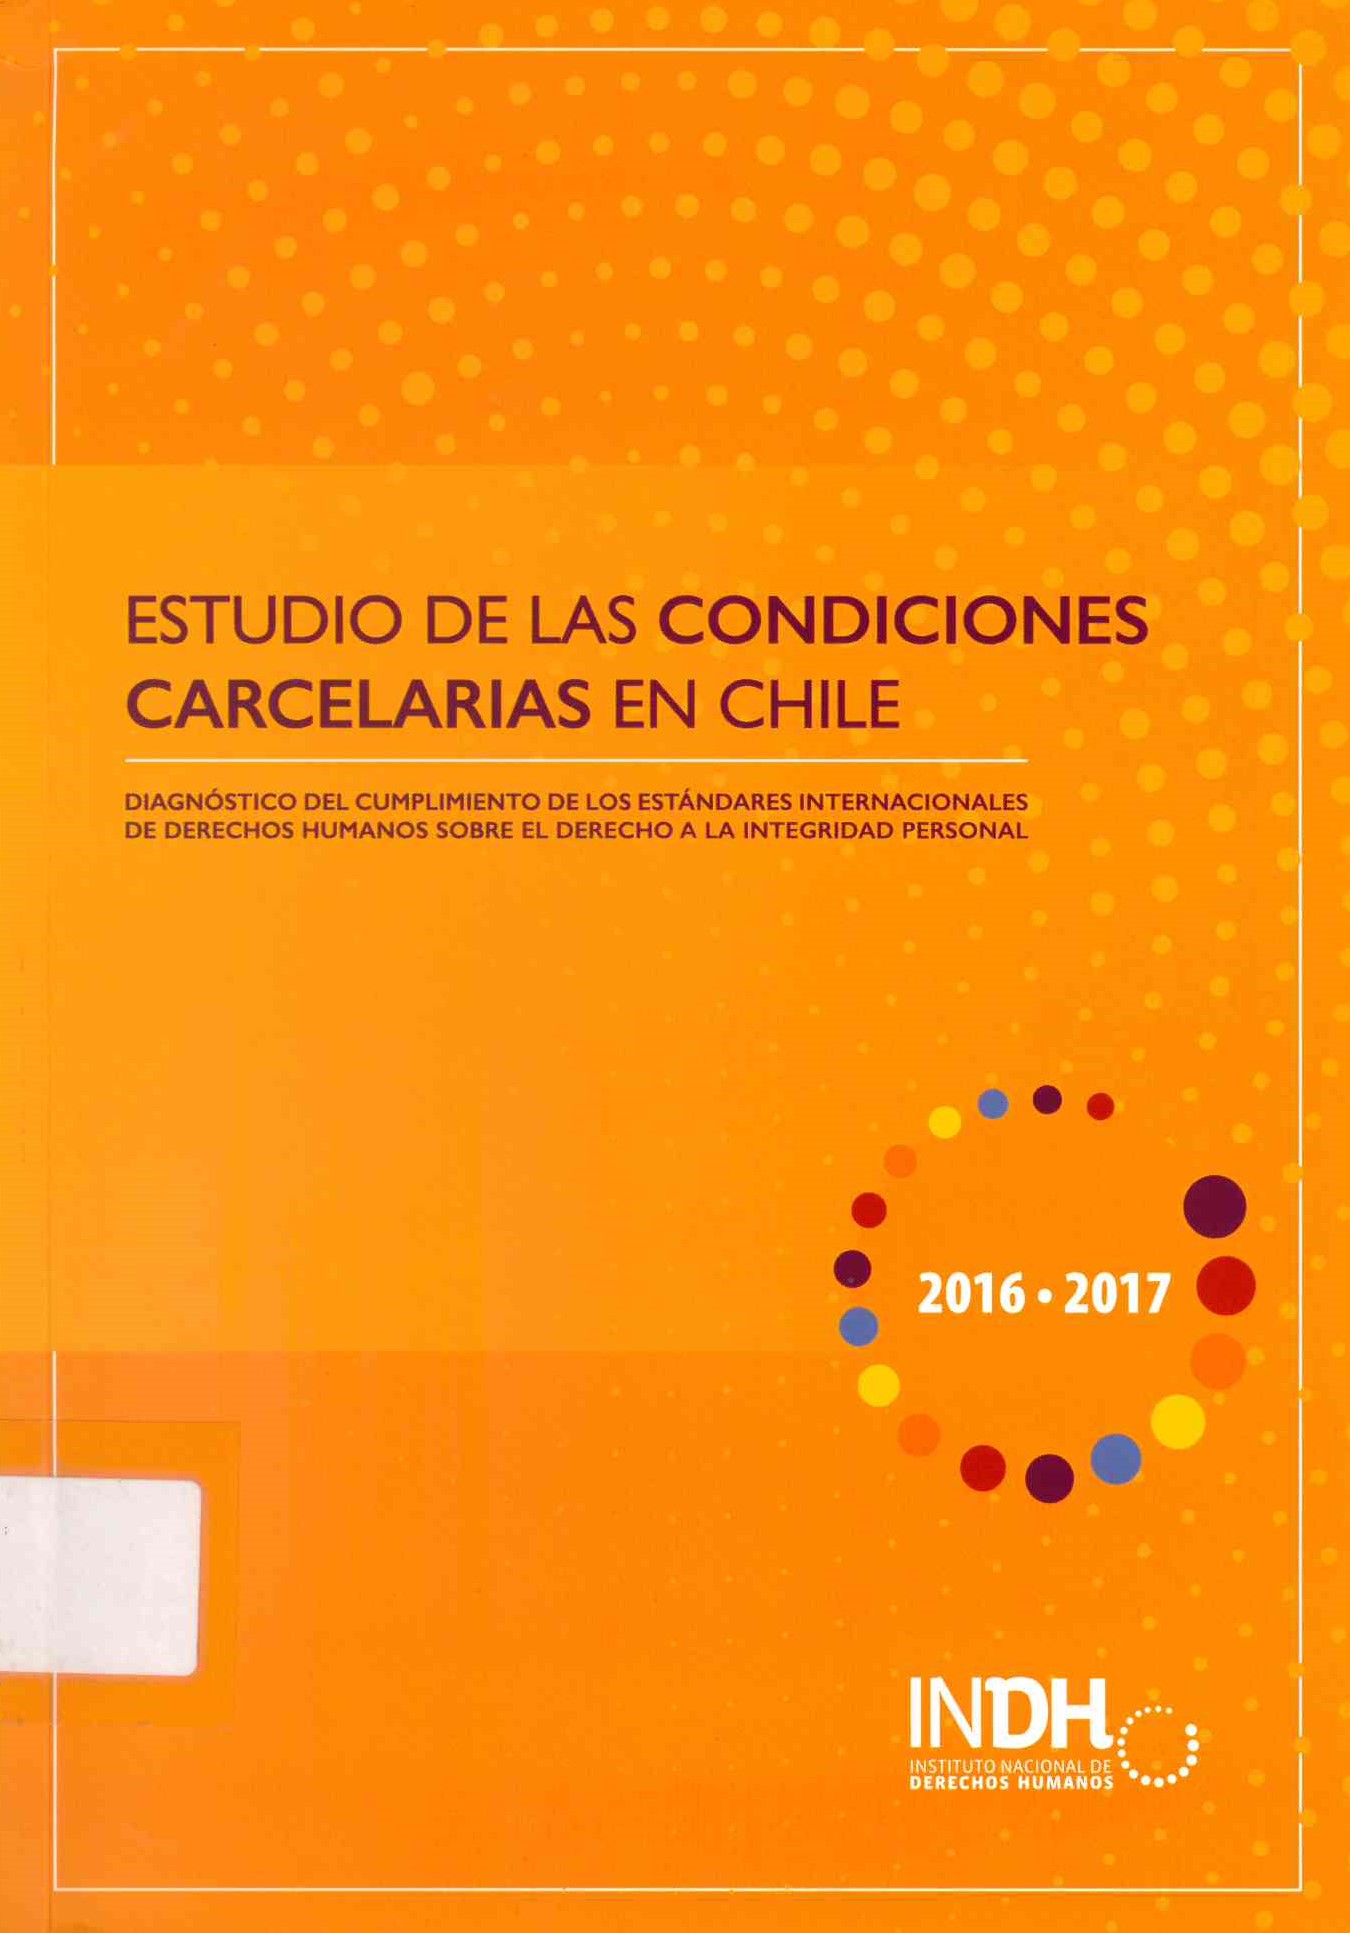 Estudio de las Condiciones Carcelarias en Chile: Diagnóstico del Cumplimiento de los Estándares Internacionales de Derechos Humanos sobre el derecho a la integridad personal